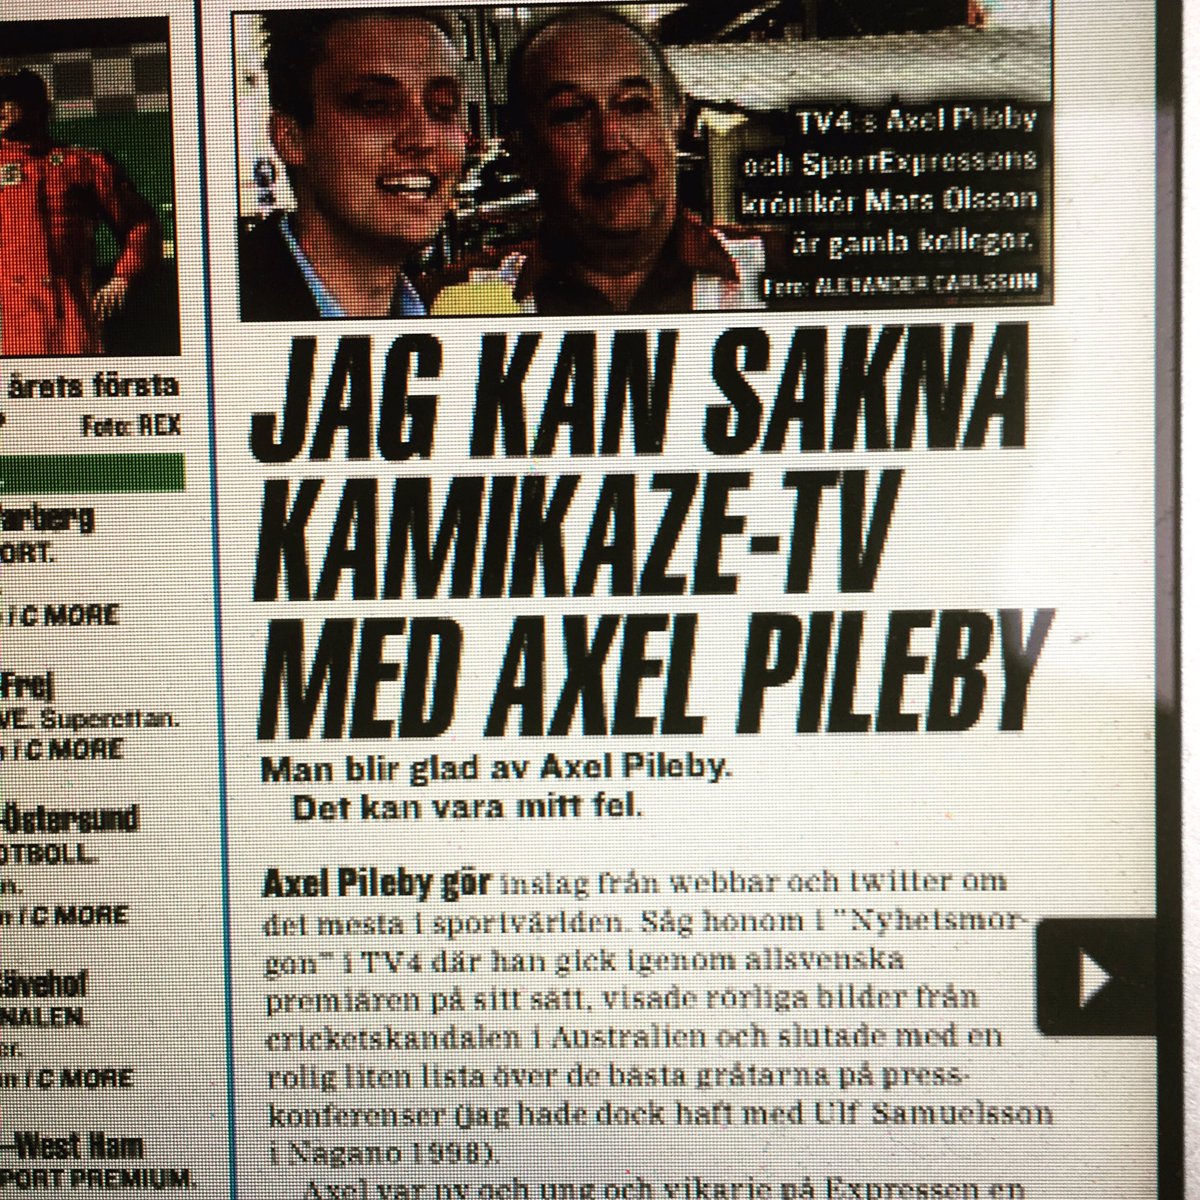 Min krönika om sport i tv i Expressen handlar i dag bl a om Axel Pileby och C More. 